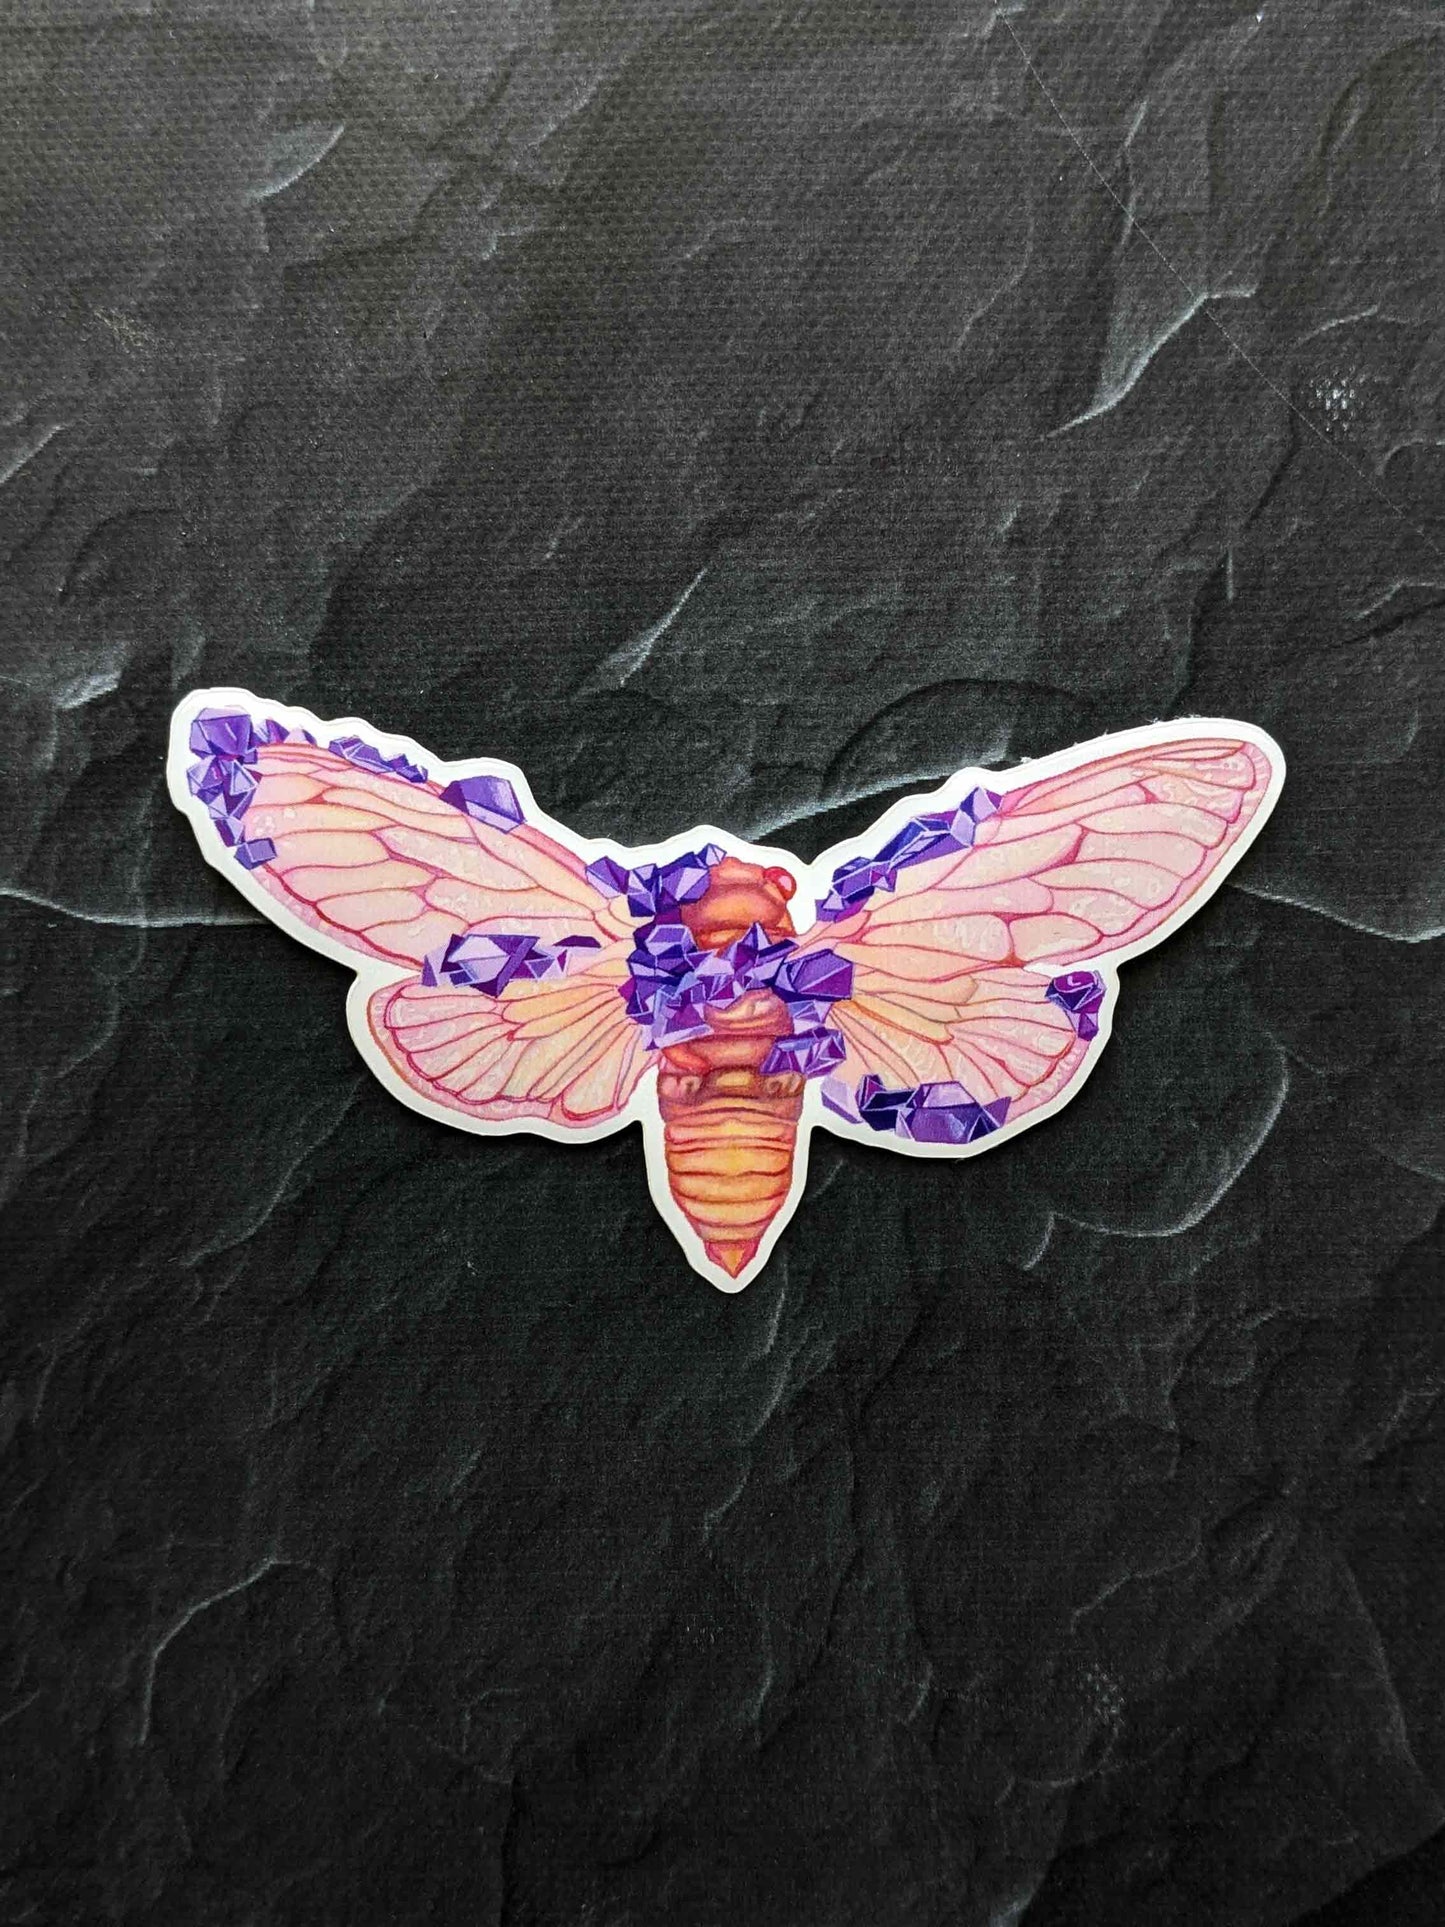 Crystal Cicada Vinyl Sticker